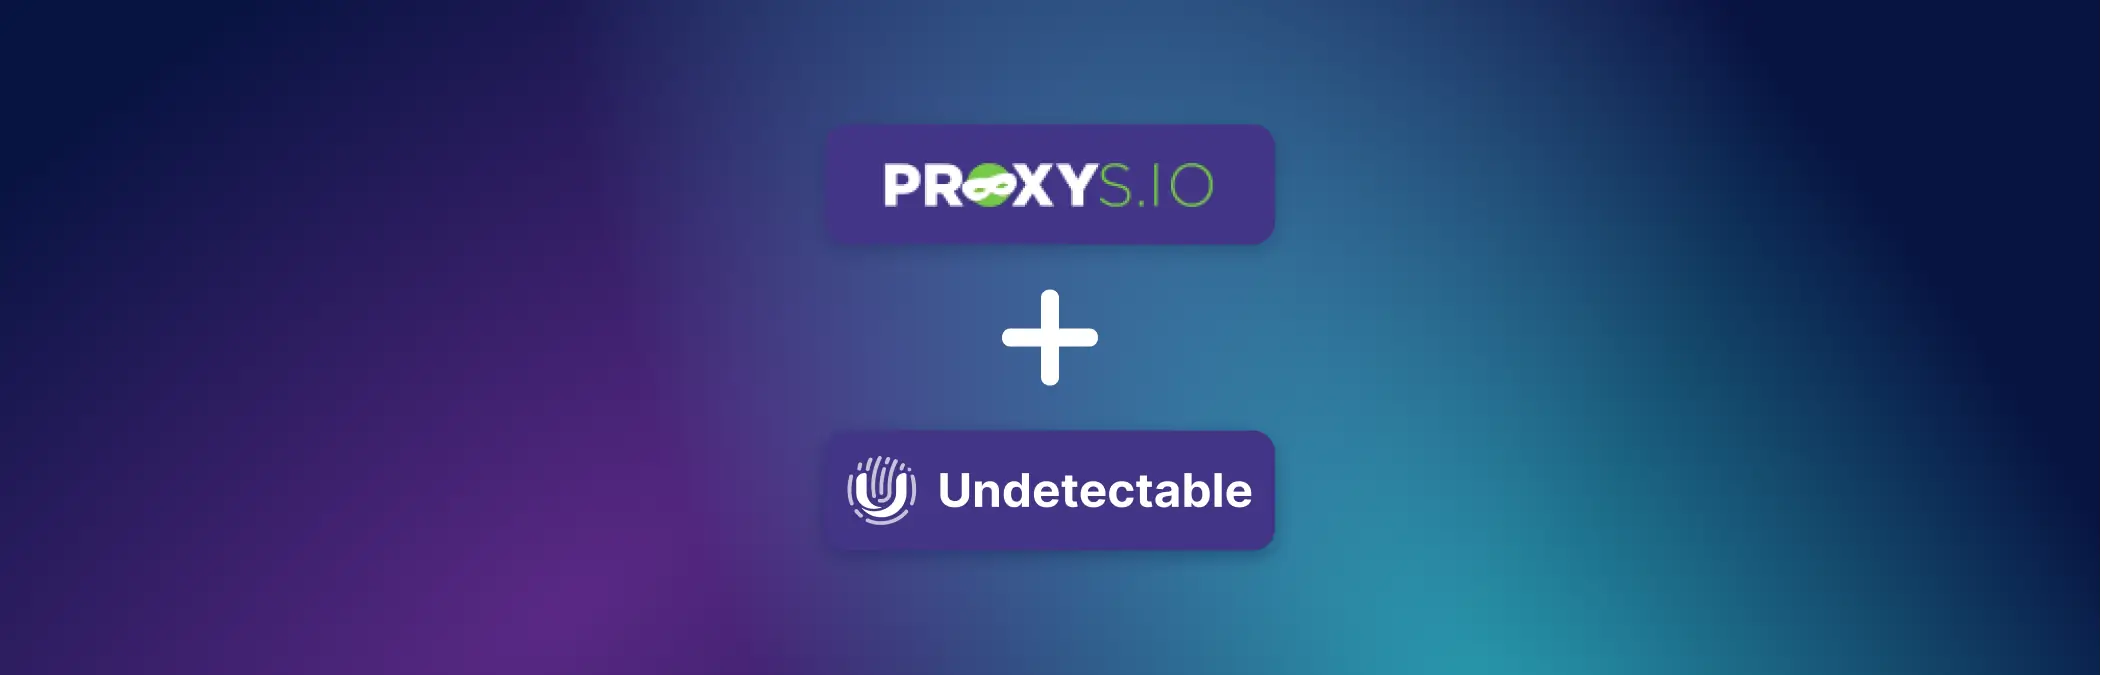 Как использовать Proxys.io в браузере Undetectable: подробная инструкция